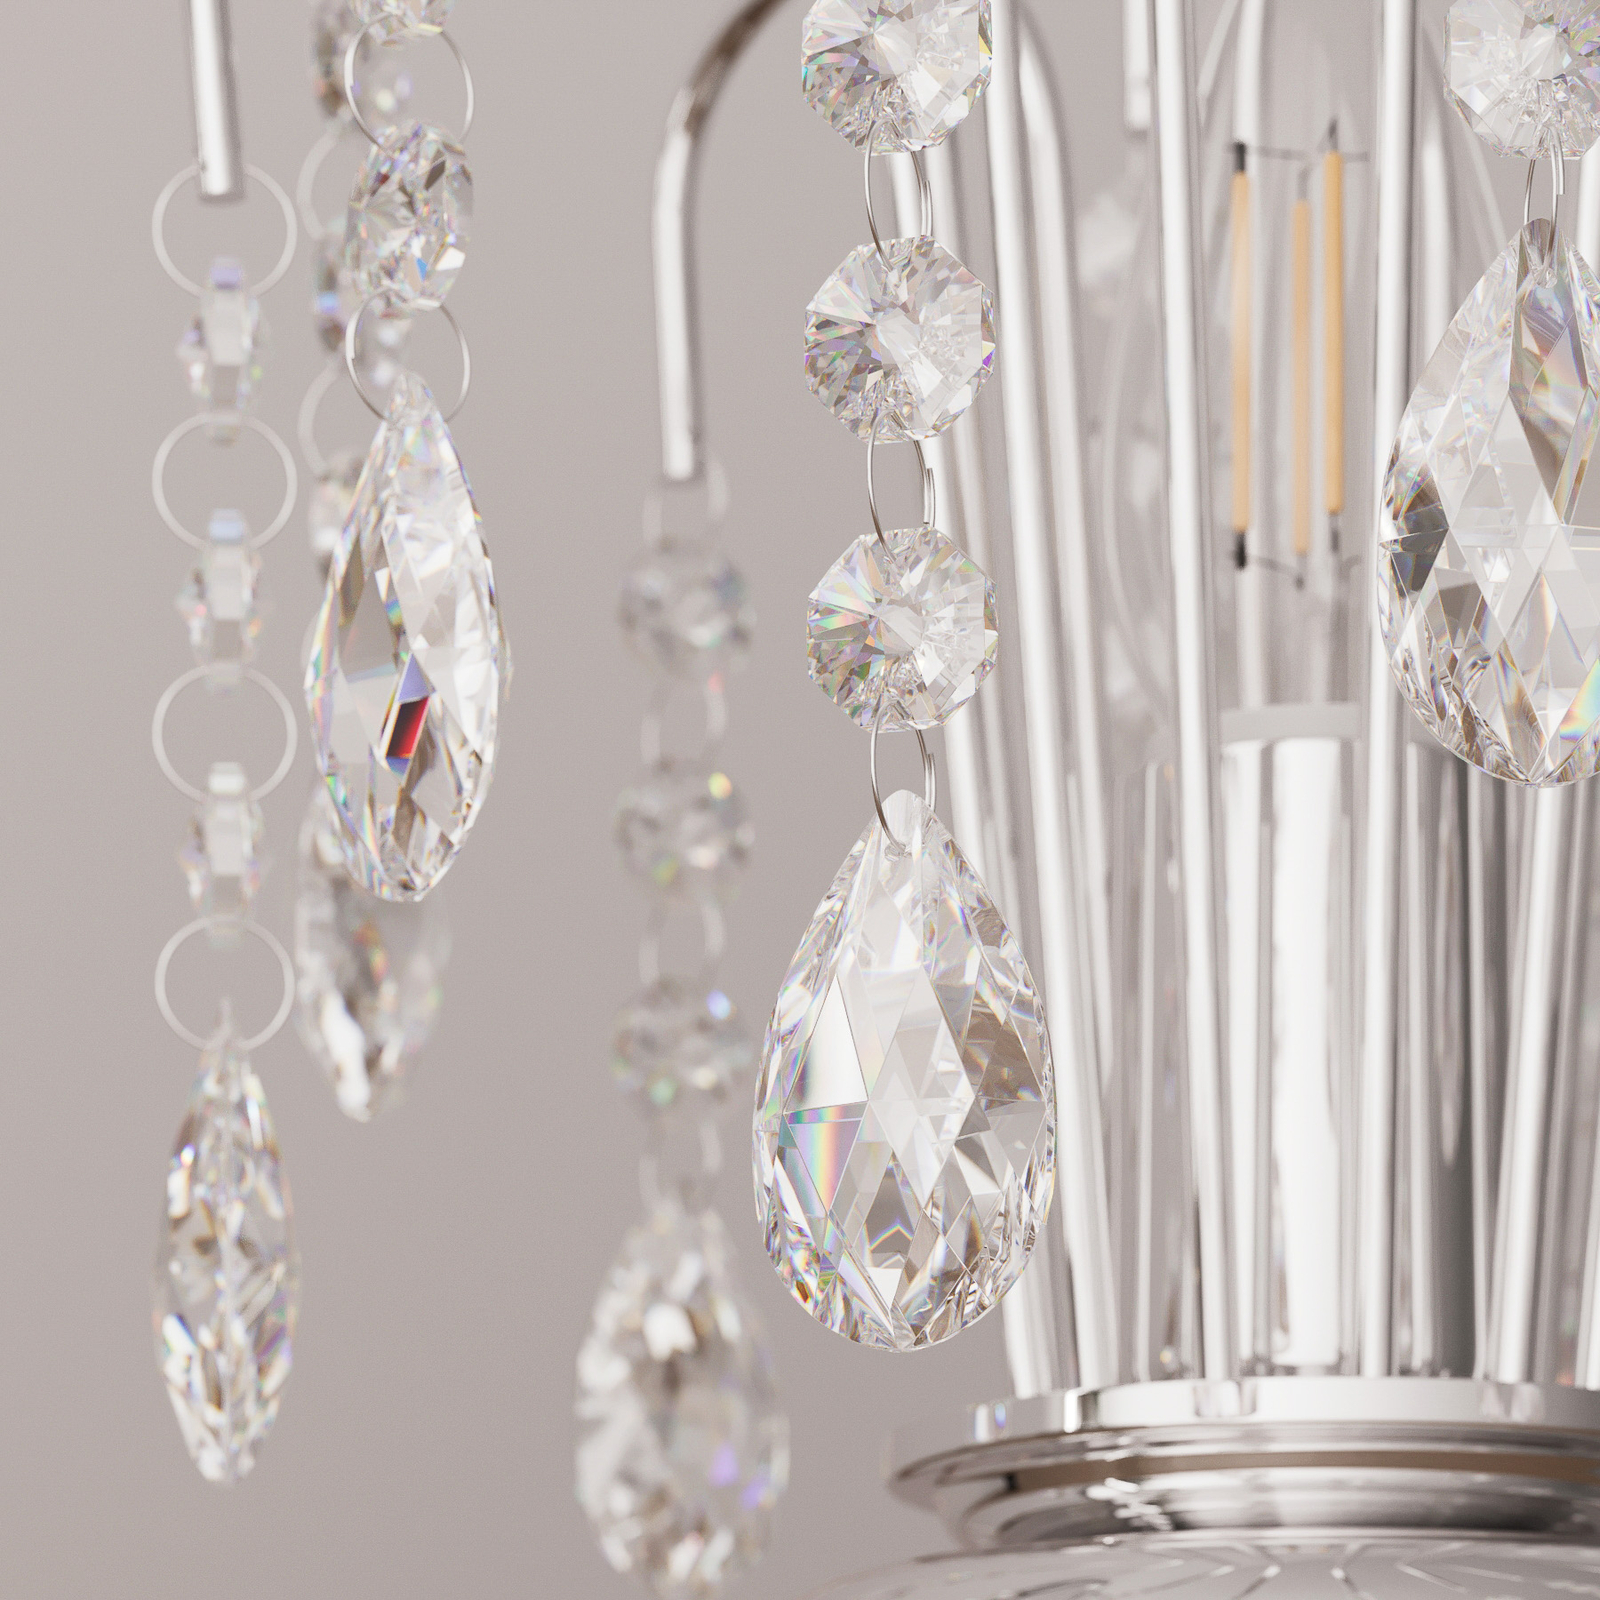 Tischlampe Pioggia mit Kristallregen, 26cm, chrom